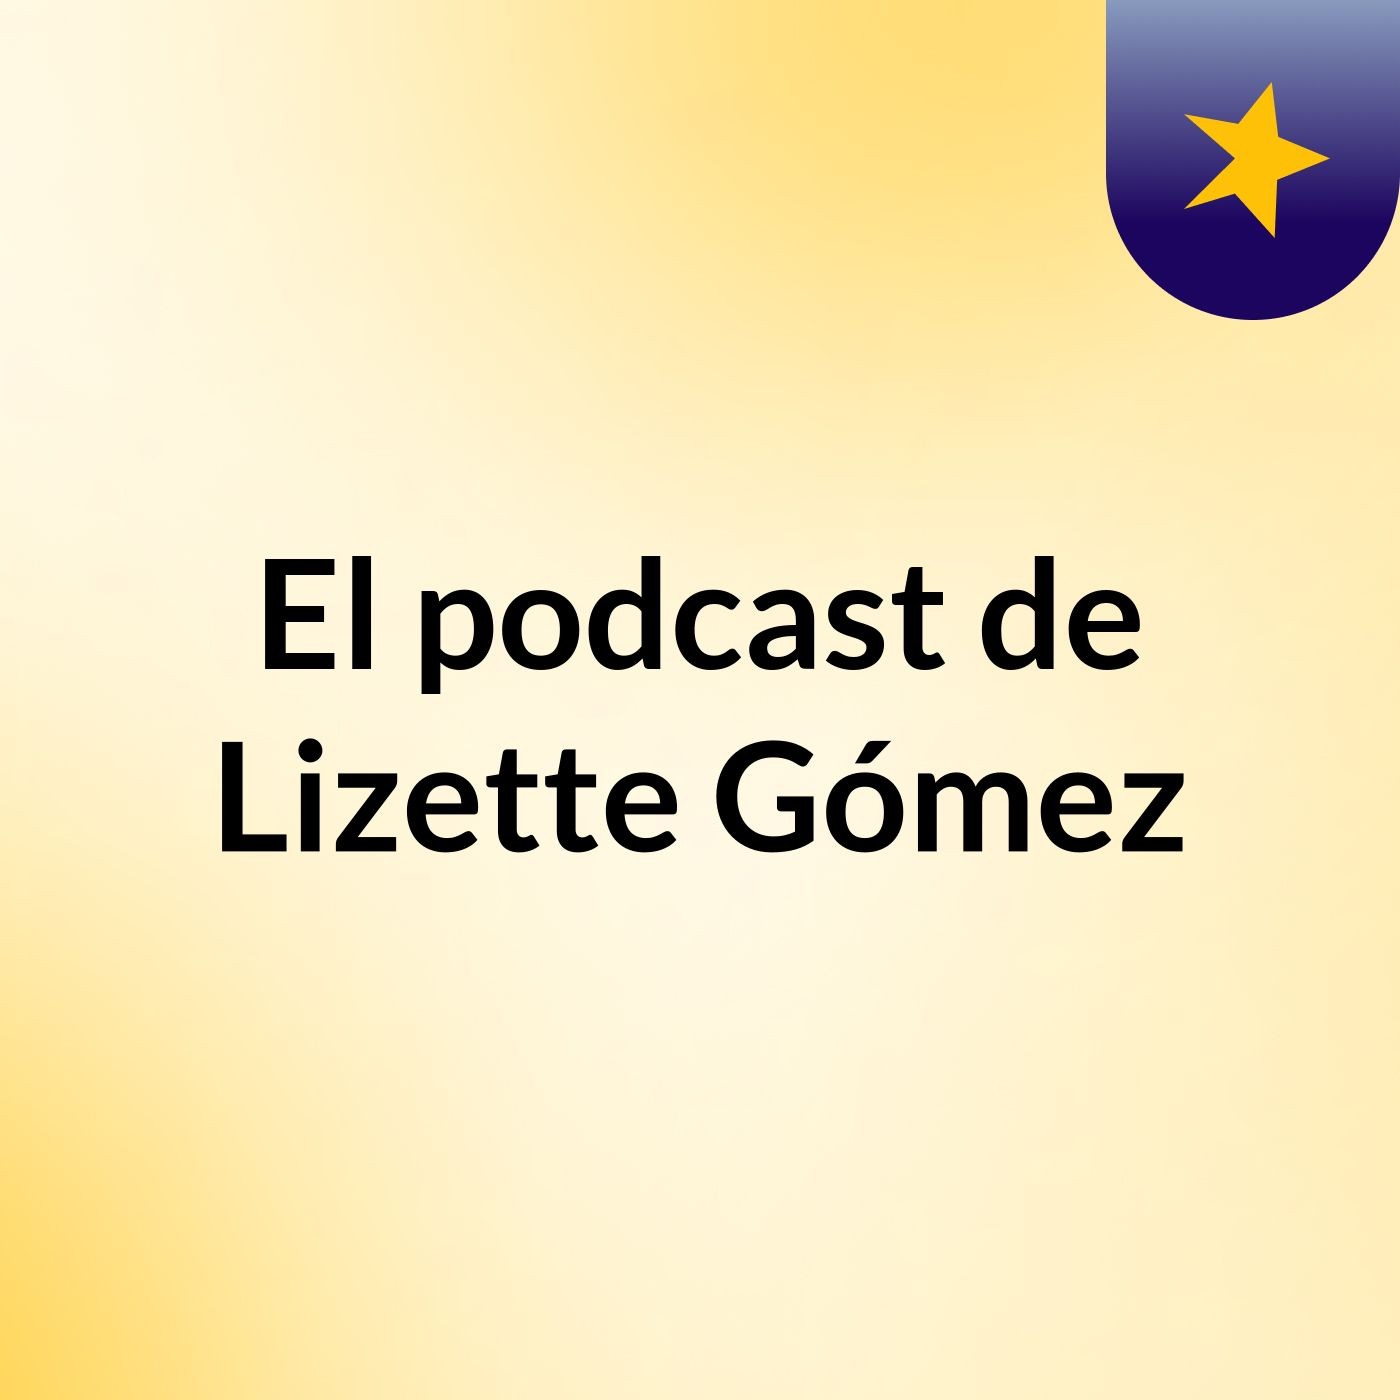 El podcast de Lizette Gómez